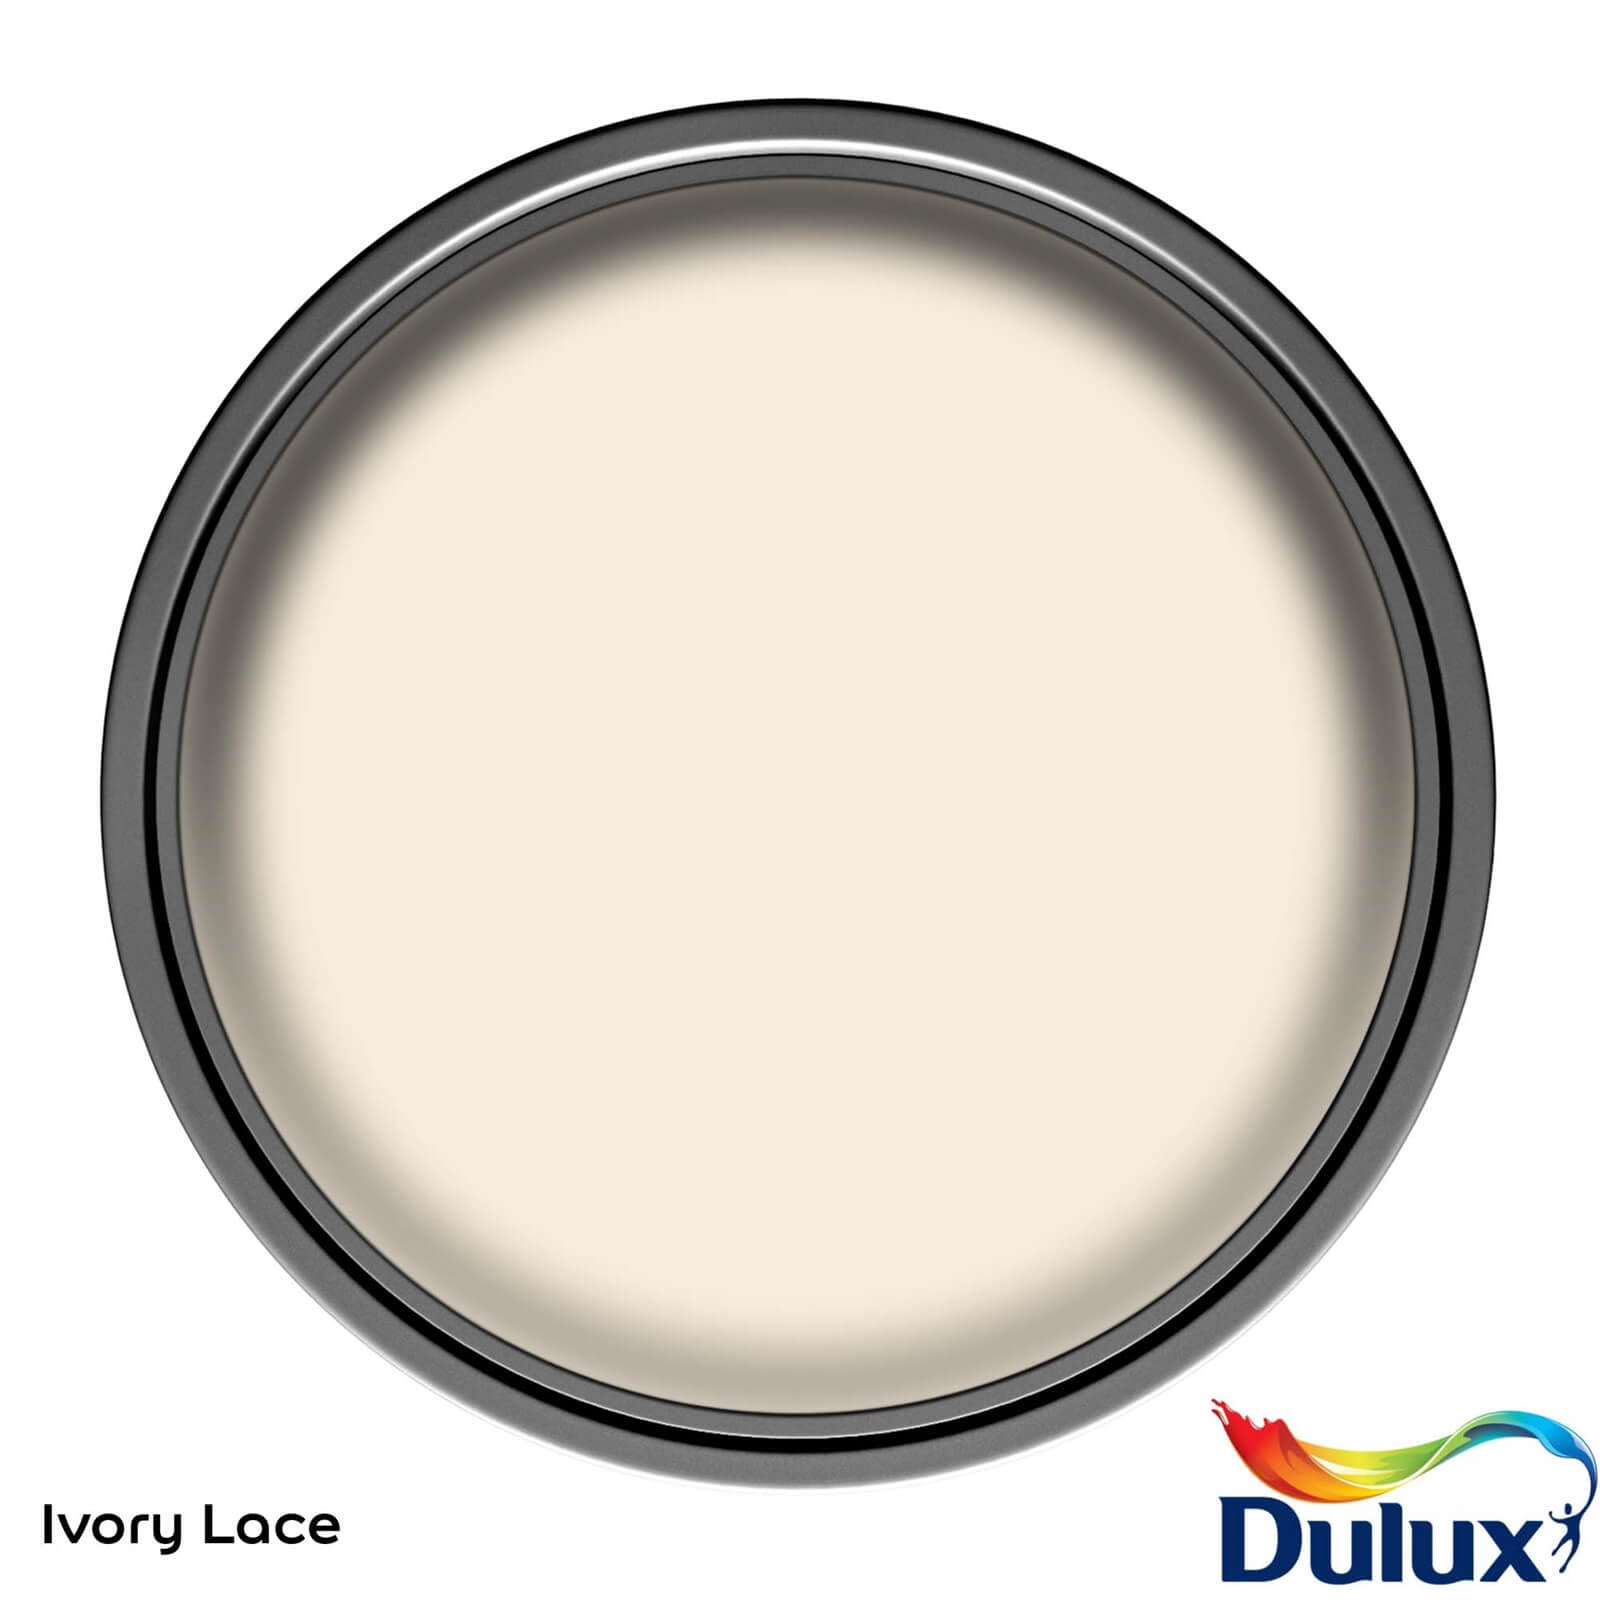 Dulux Easycare Washable & Tough Ivory Lace Matt Paint - 2.5L